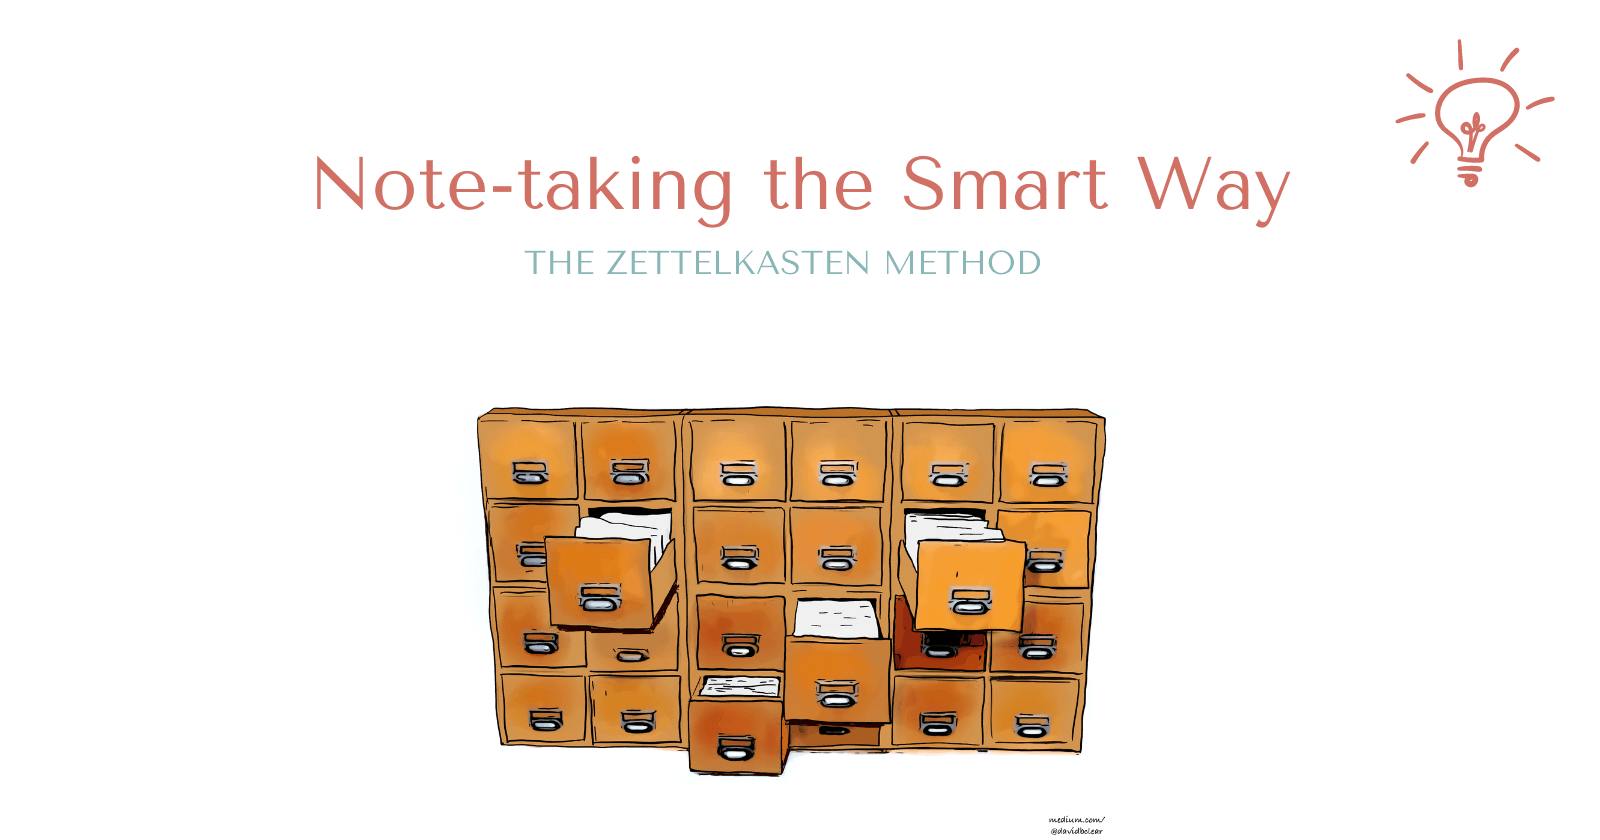 The Zettelkasten Method: Note-taking the Smart Way